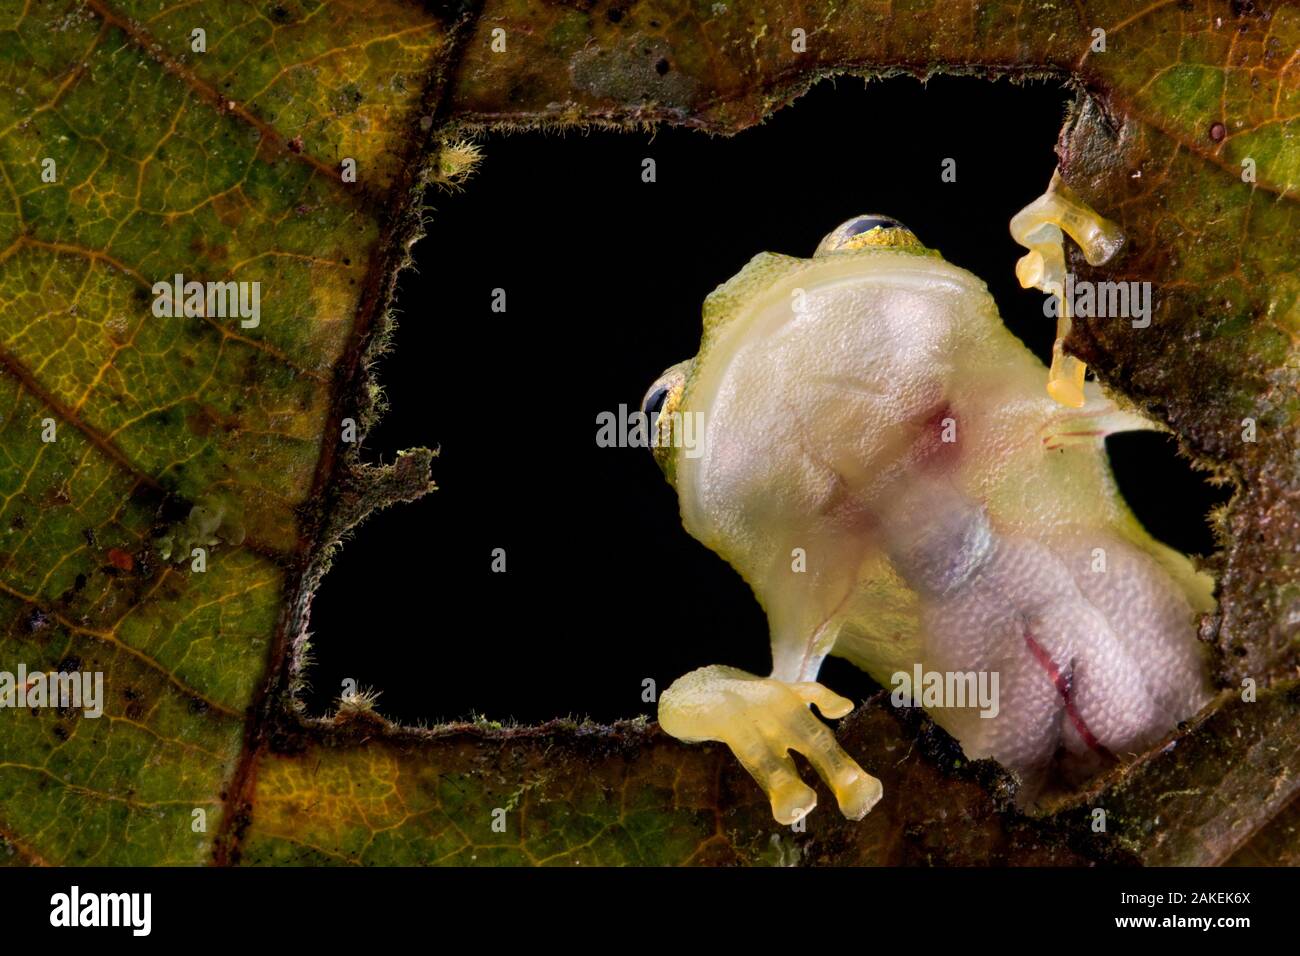 Rana de Vidrio reticulado (Hyalinobatrachium valerioi) vistos a través del agujero de la hoja al ver los órganos internos a través de su piel transparente, Canande, Esmeraldas, Ecuador. Foto de stock